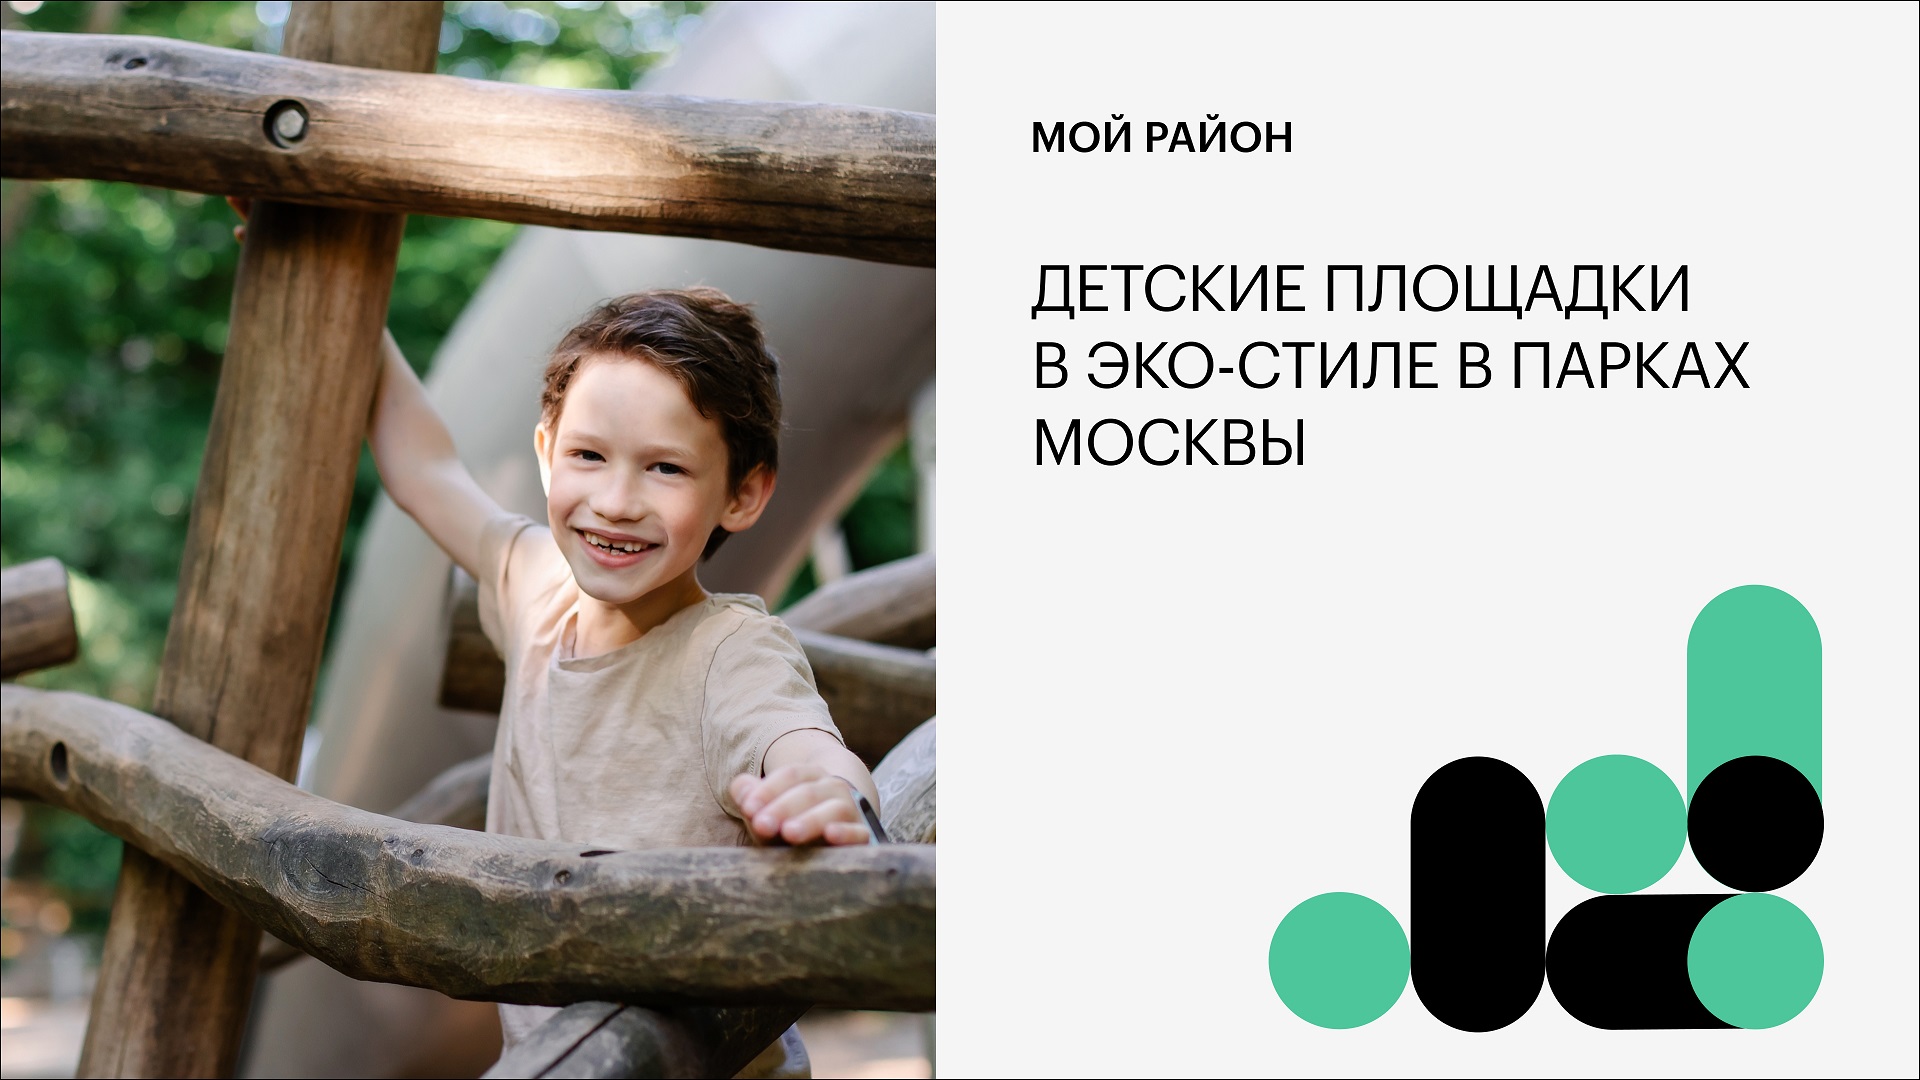 Детские площадки в эко-стиле в парках Москвы